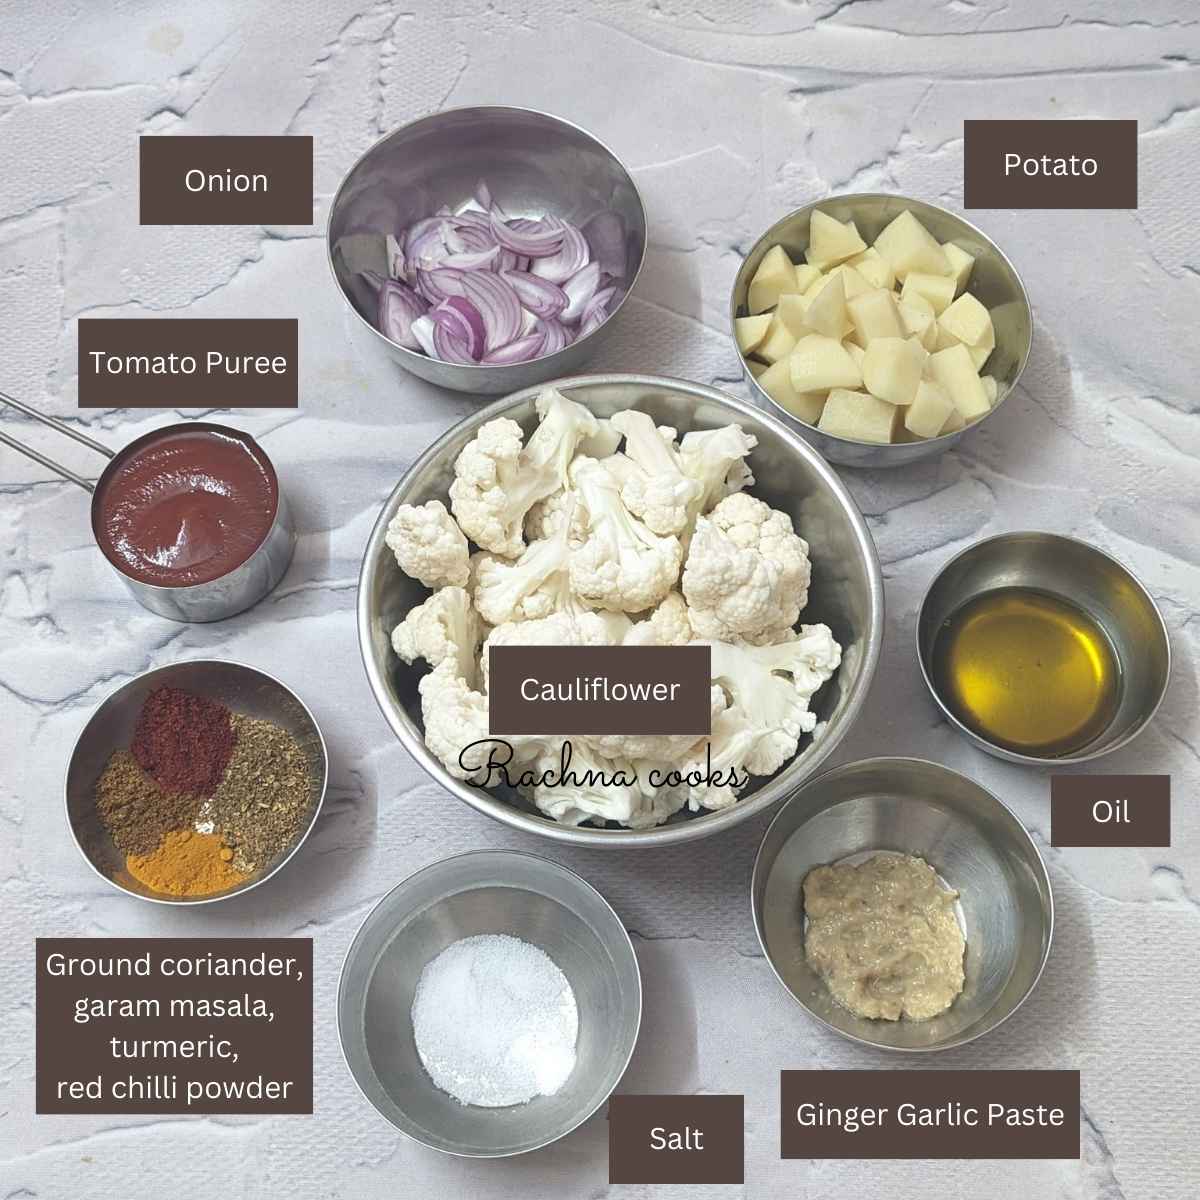 Ingredients for making aloo gobi